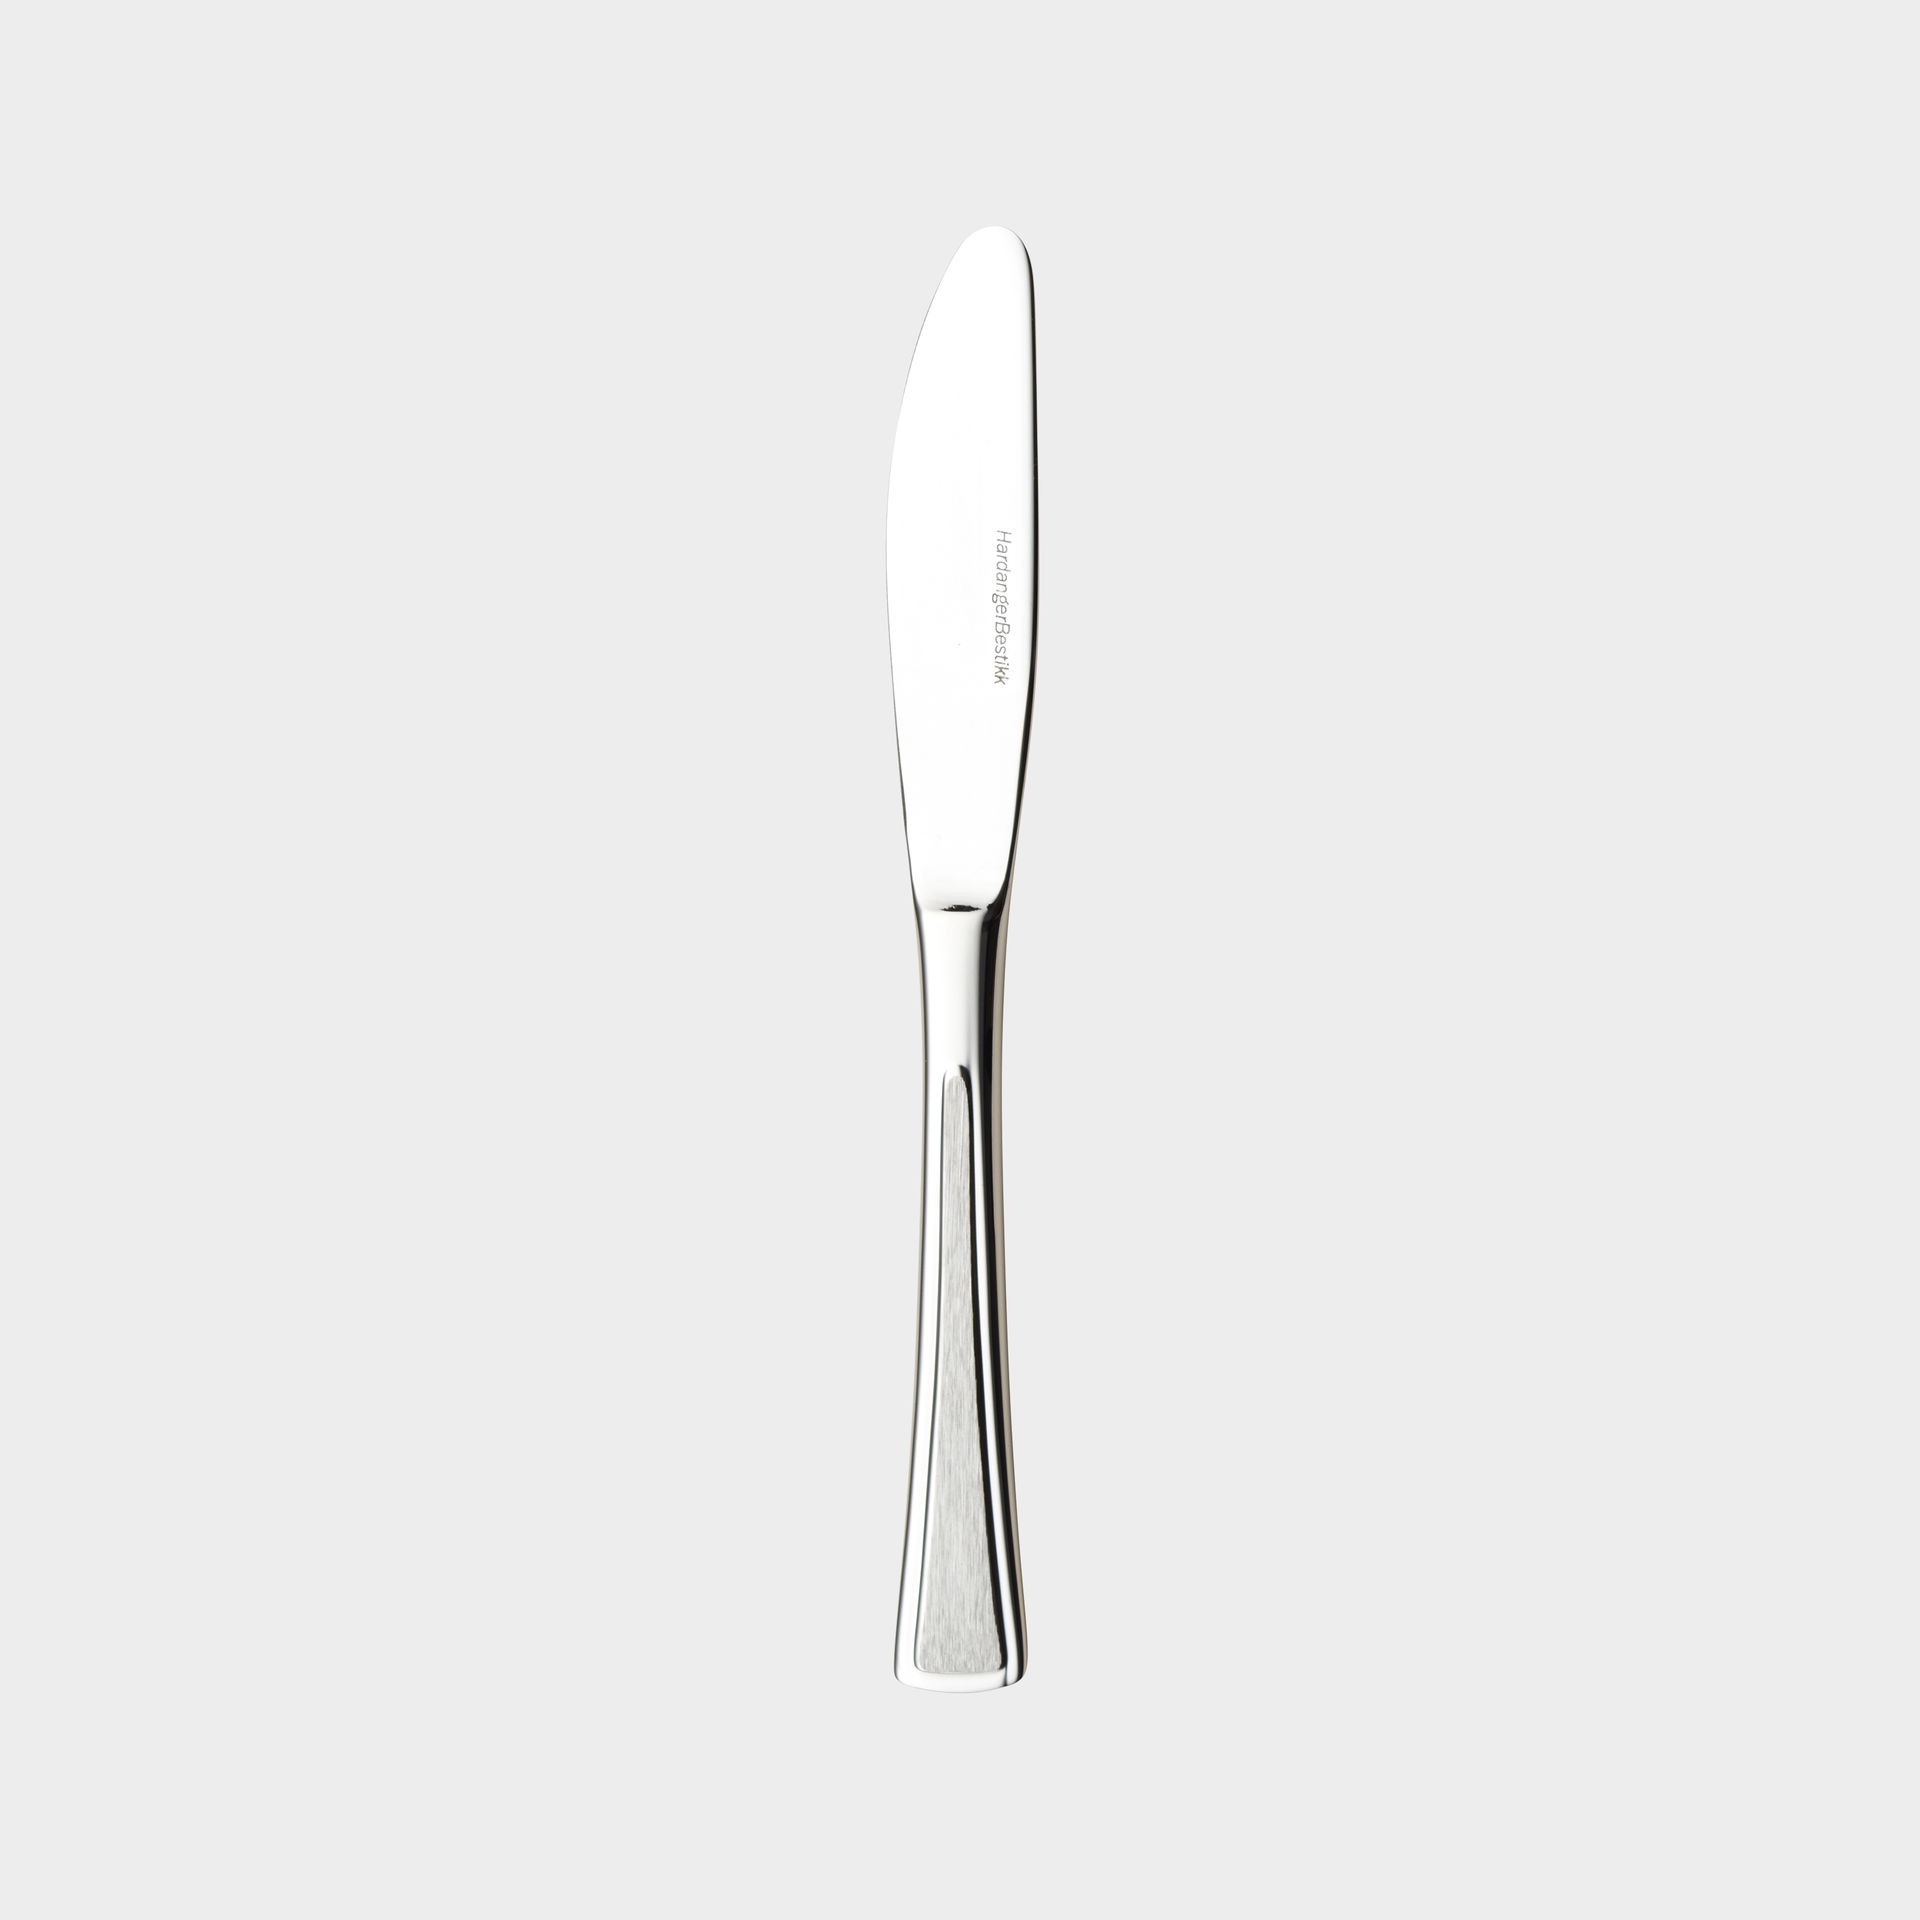 Ramona appetizer knife product image